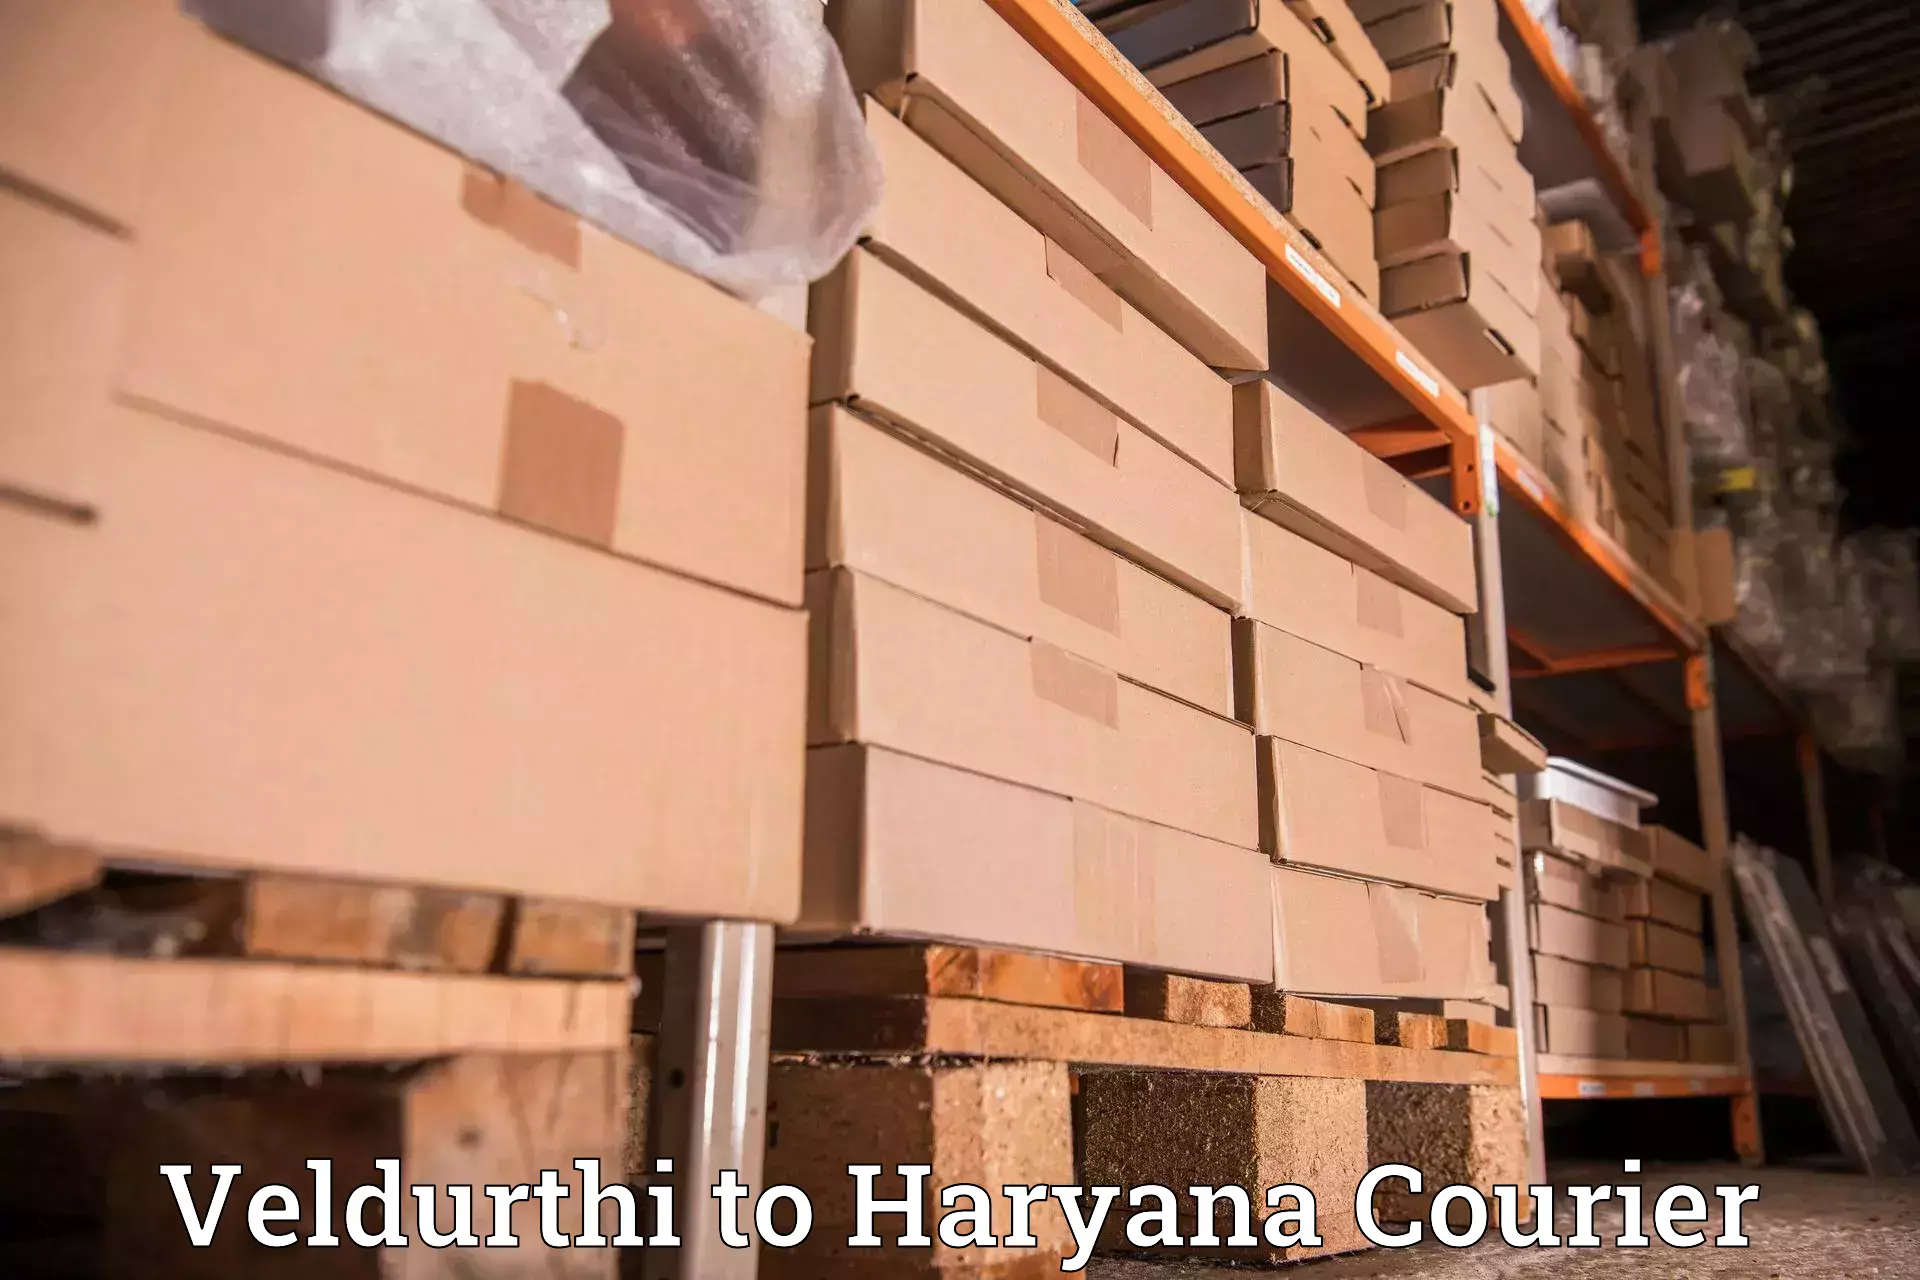 Courier service partnerships Veldurthi to Ambala